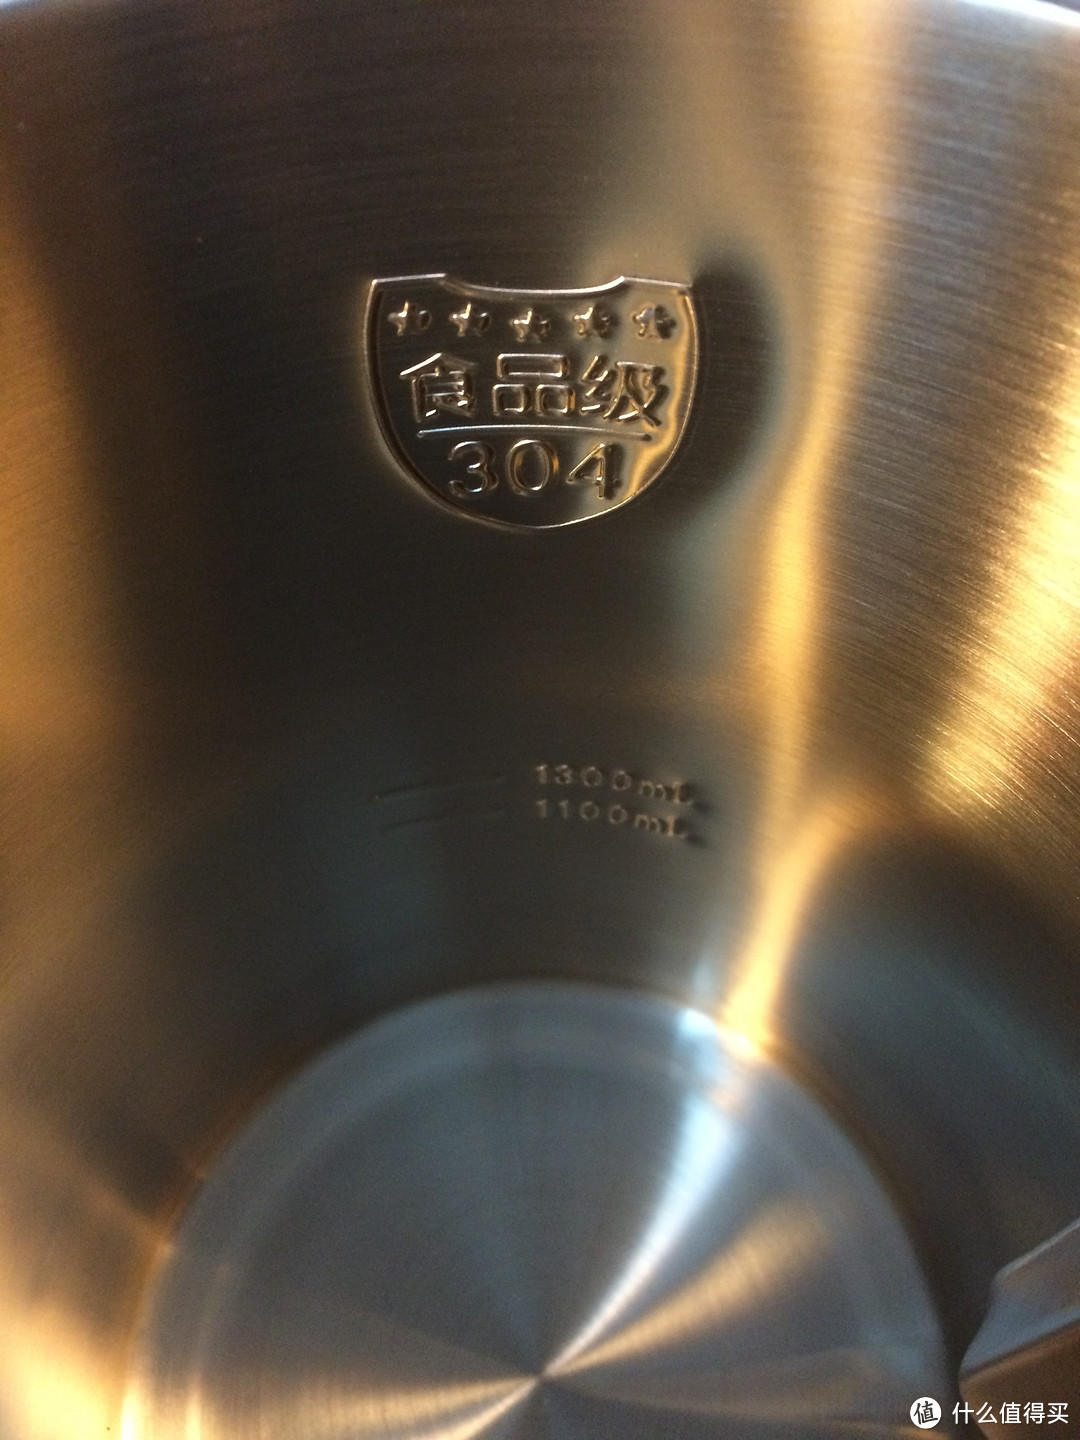 只专注于豆浆——九阳DJ13B-C651SG豆浆机评测